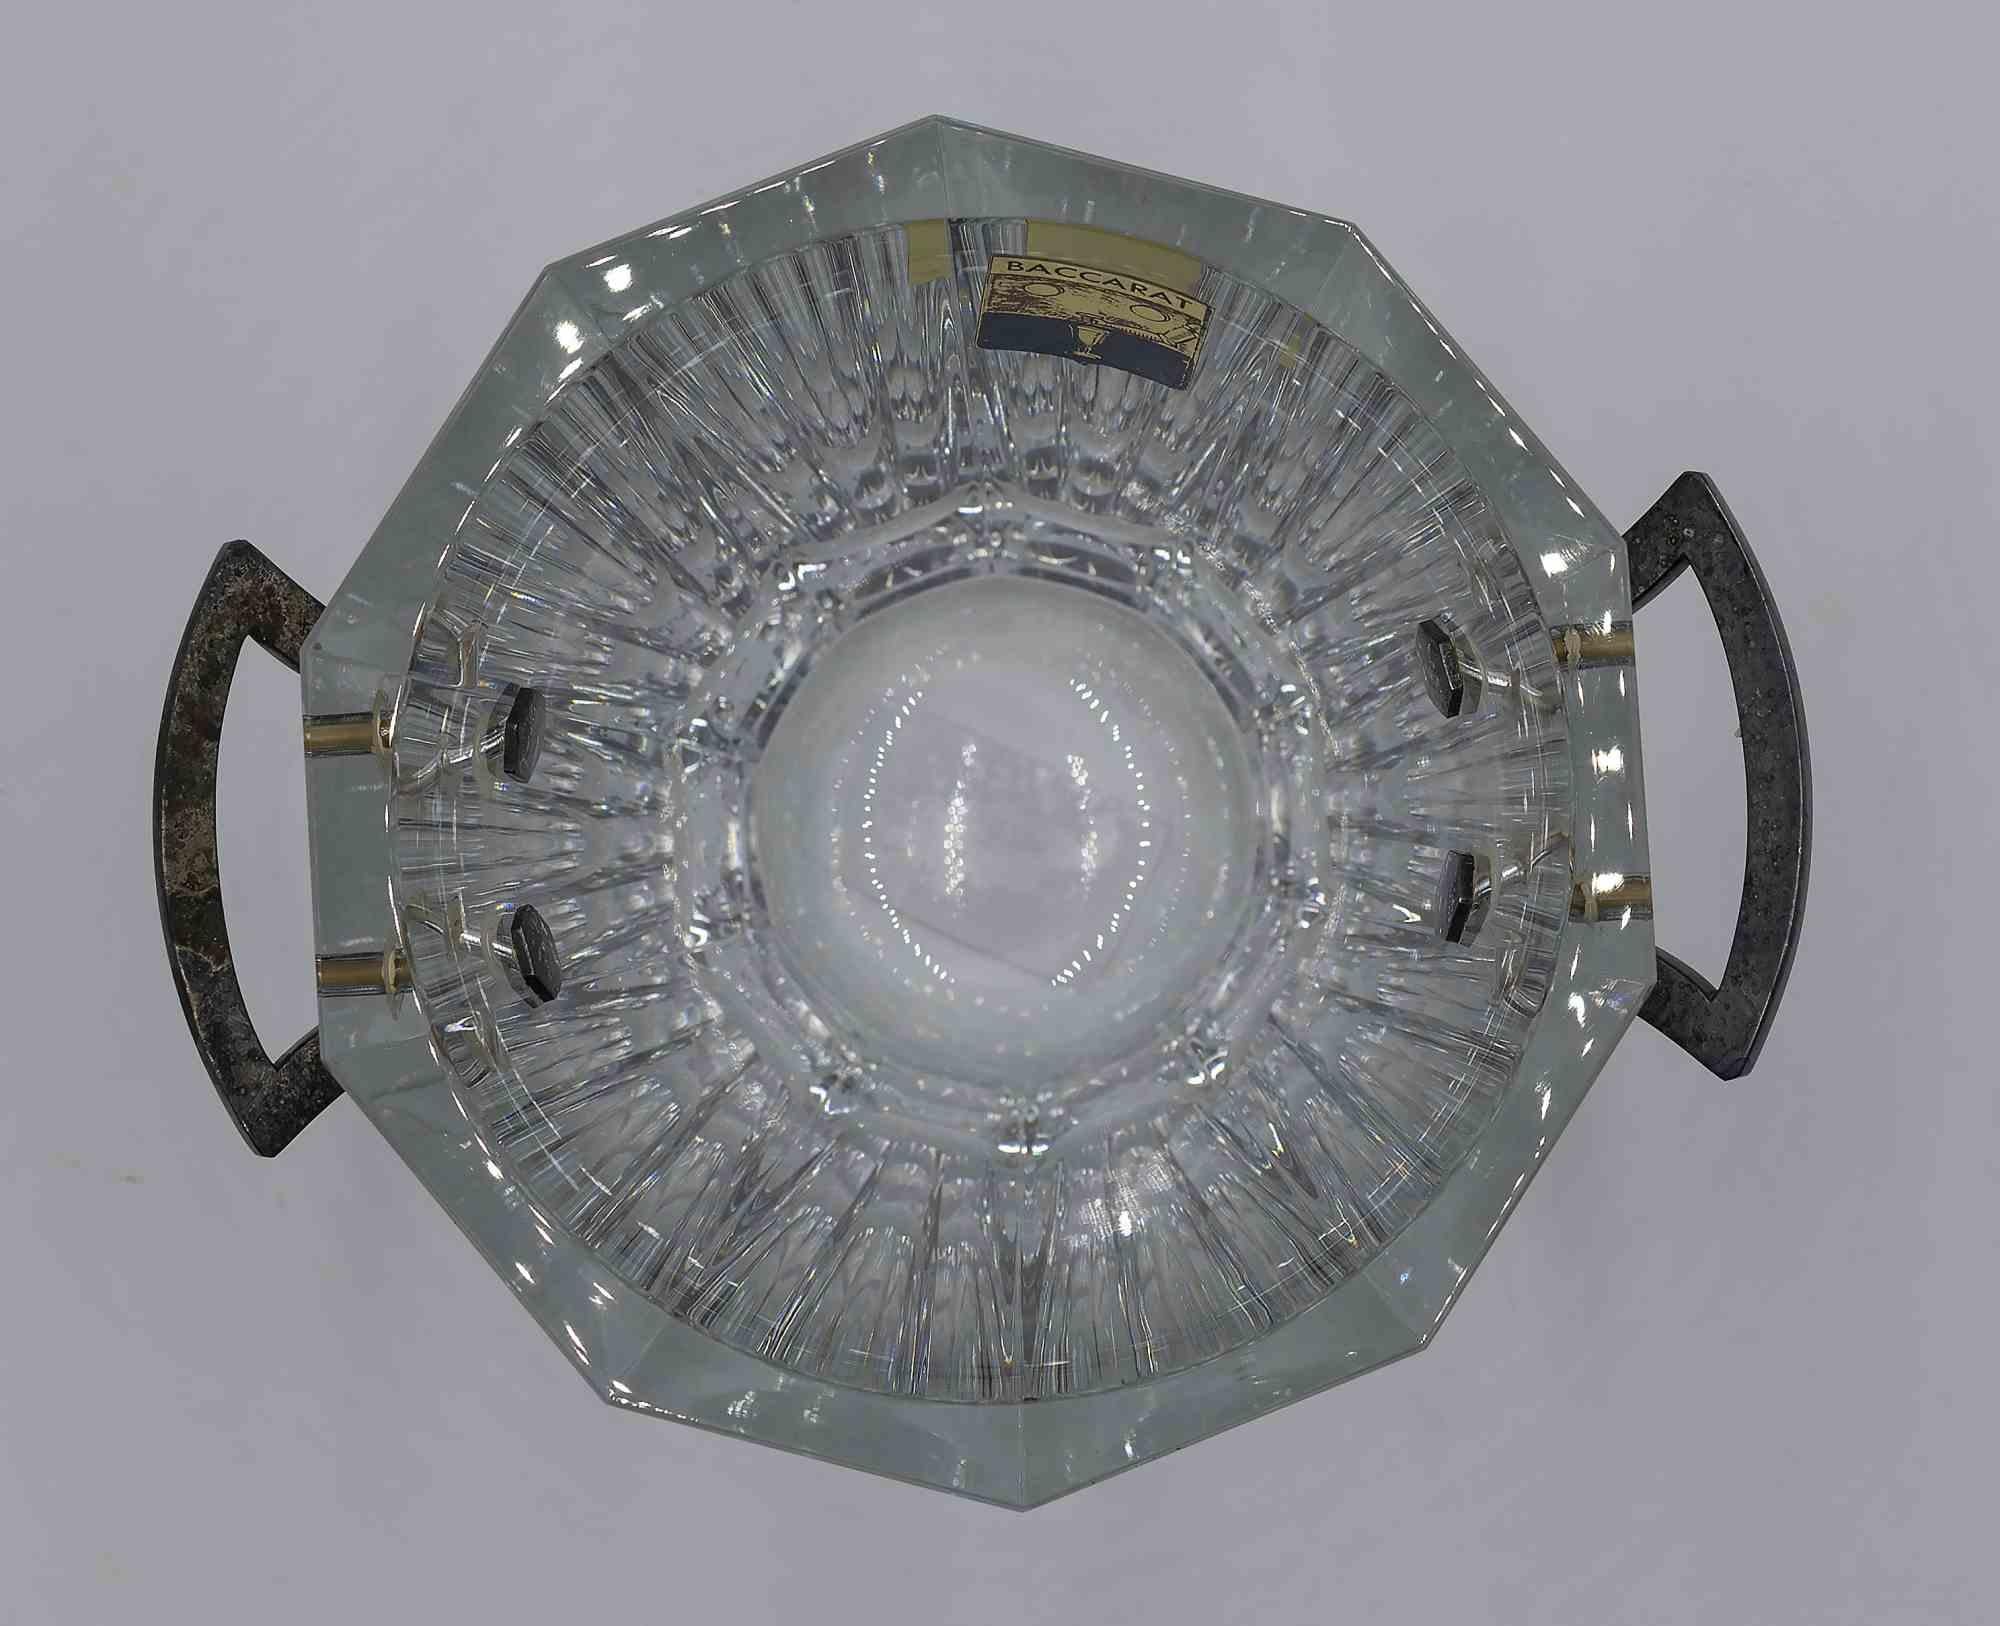 Le seau à glace Baccarat est un objet décoratif original réalisé par la manufacture Baccarat dans les années 1970. 

Seau à glace entièrement réalisé en cristal. 

Cet objet iconique de Baccarat est un élément culte de l'ameublement exclusif et